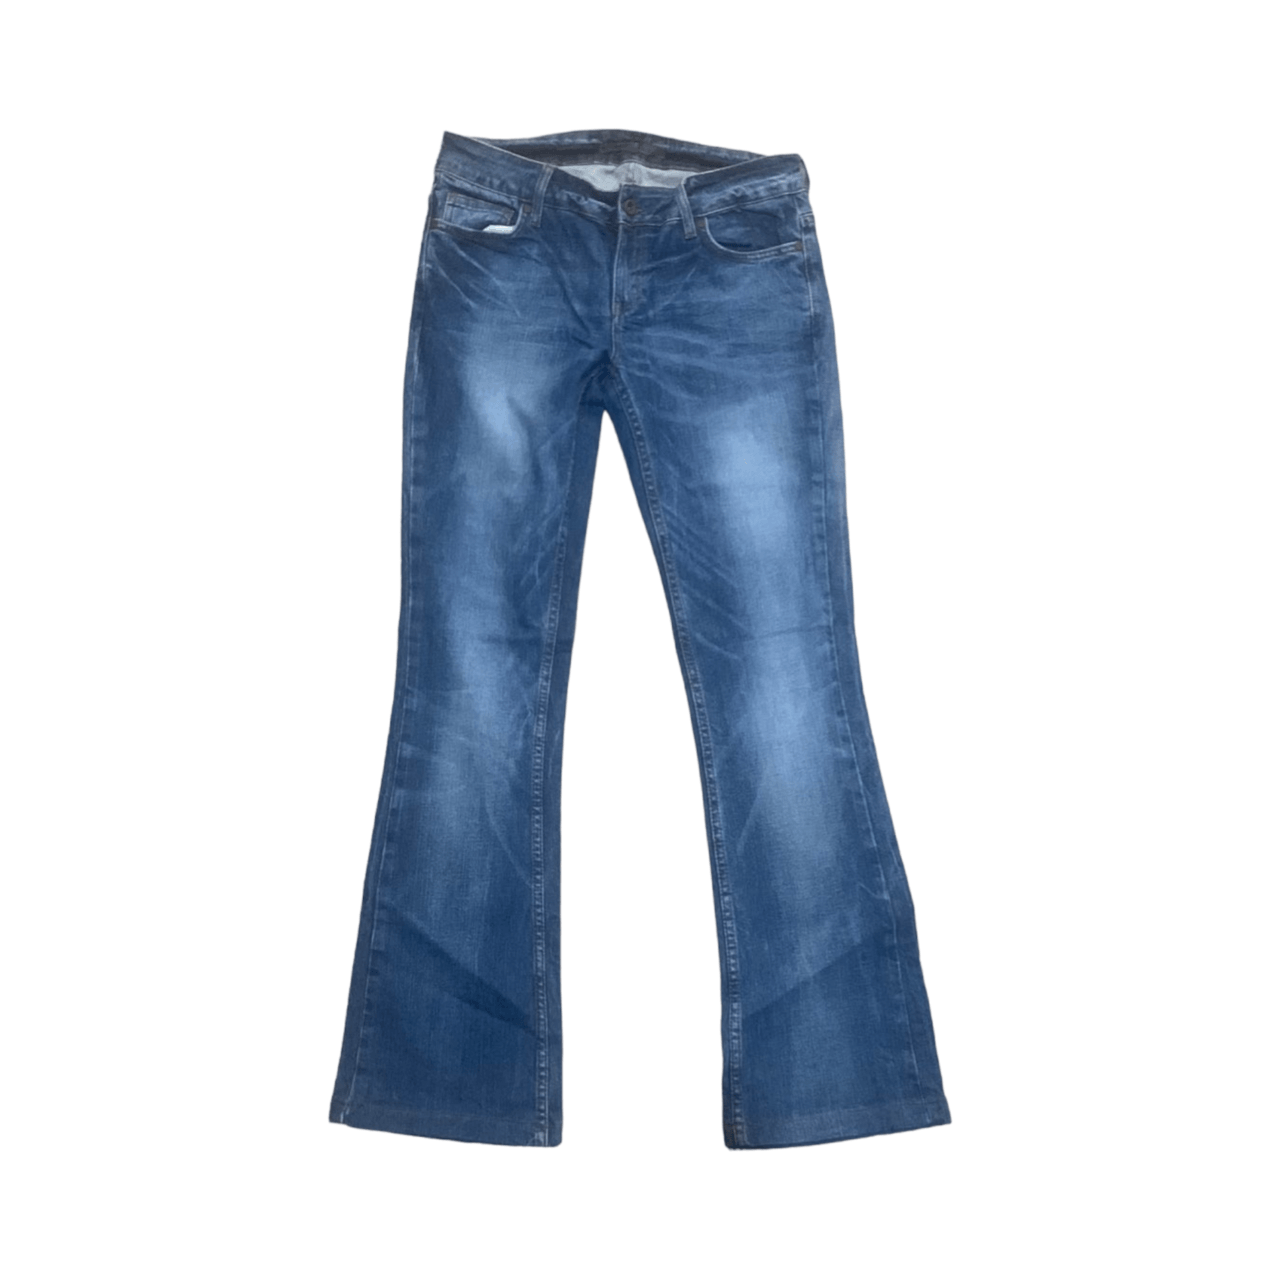 Levi's Blue Jeans Long Pants